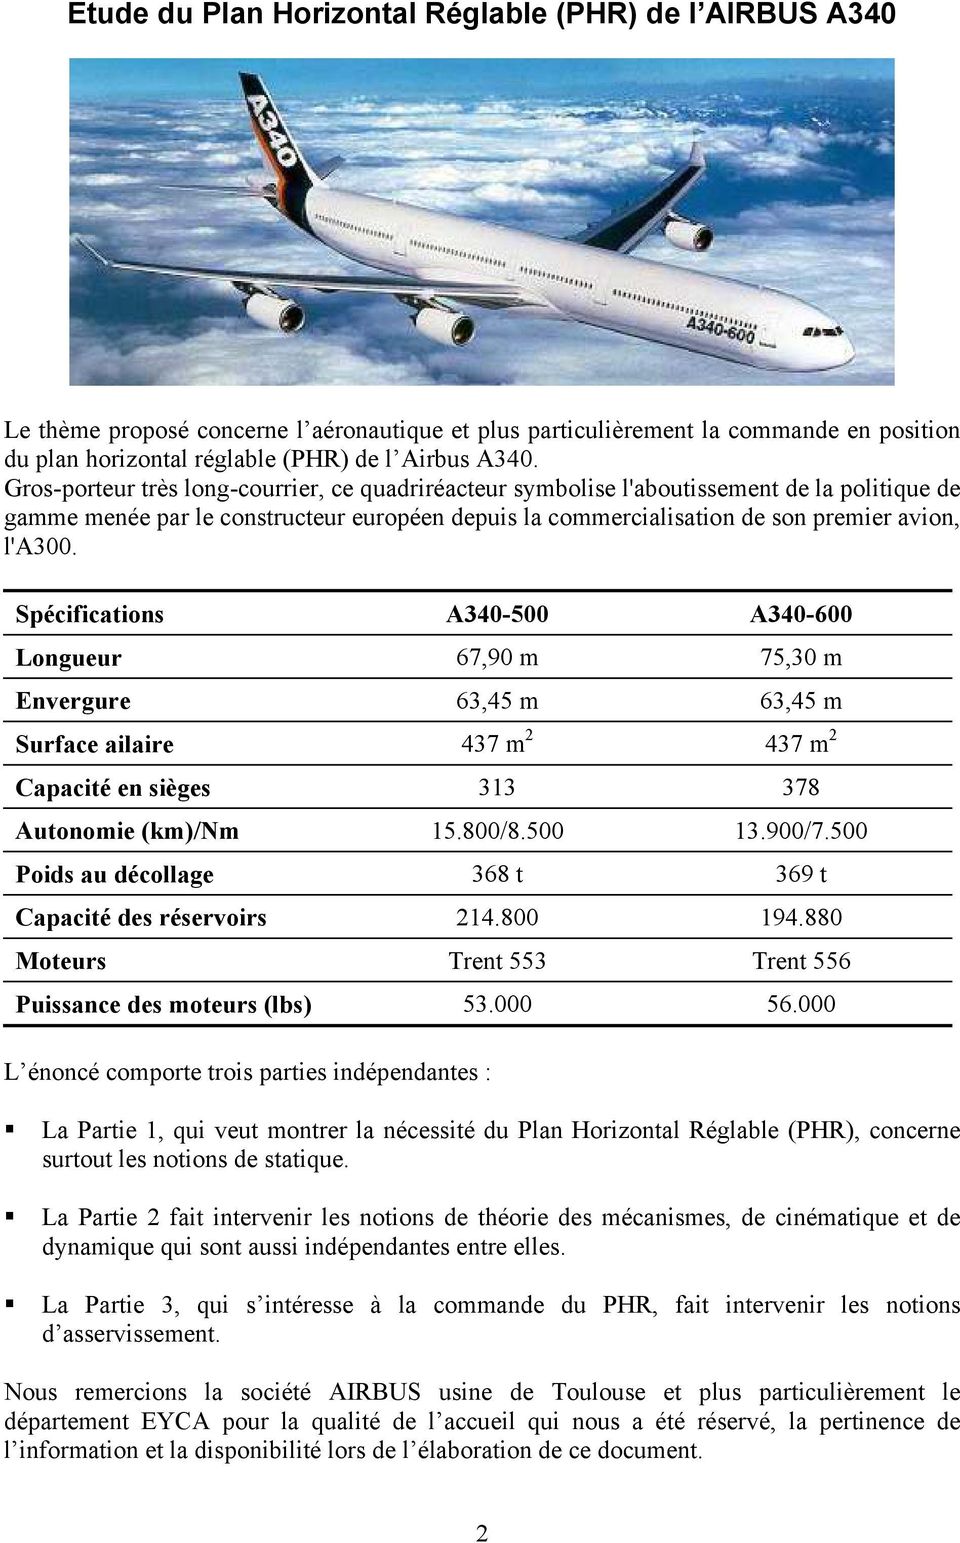 Spécifications A340-500 A340-600 Longueur 67,90 m 75,30 m Envergure 63,45 m 63,45 m Surface ailaire 437 m 437 m Capacité en sièges 33 378 Autonomie (km)/nm 5.800/8.500 3.900/7.